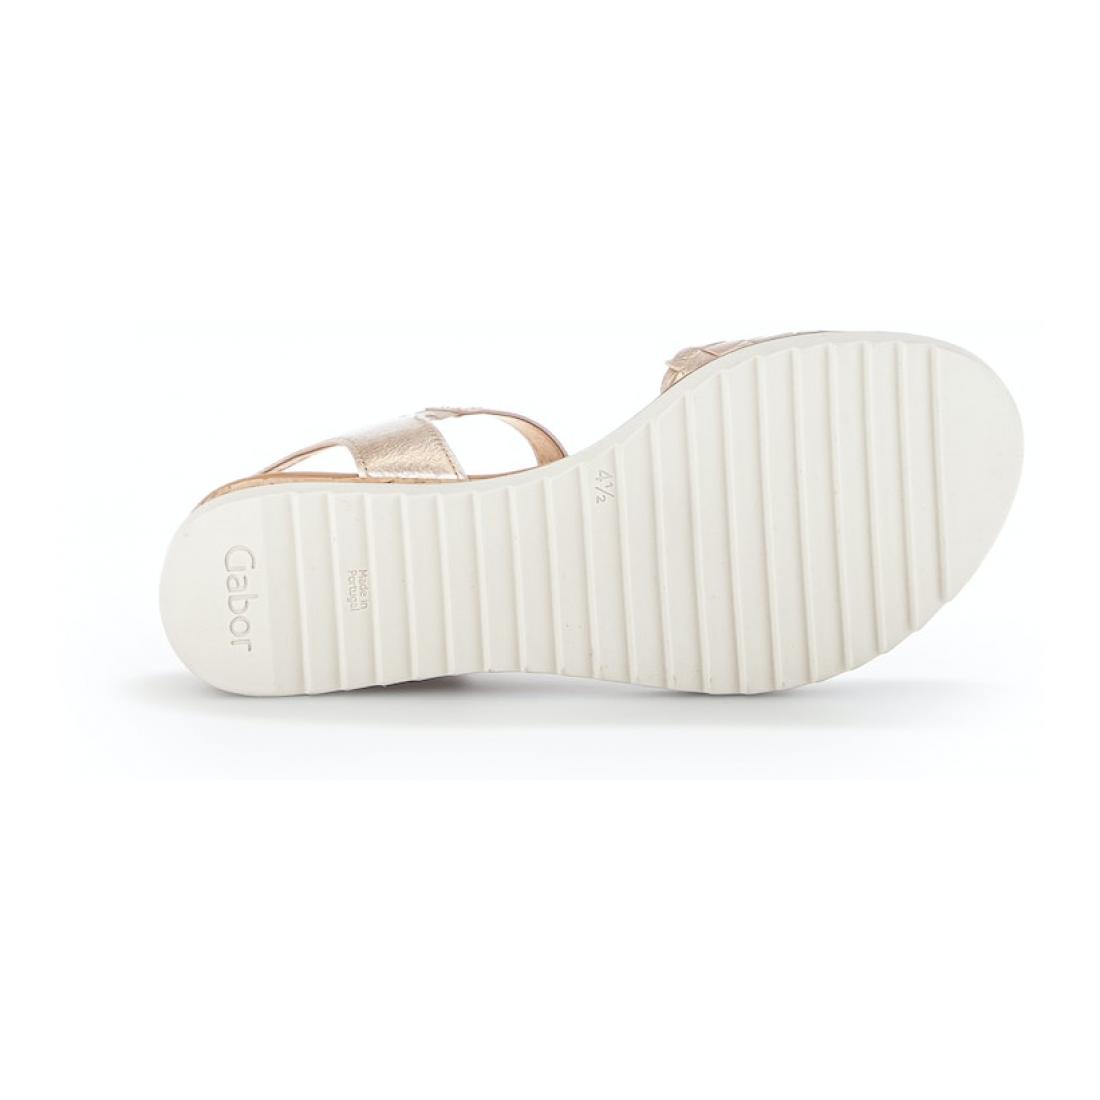 Gabor Comfort Sandalette